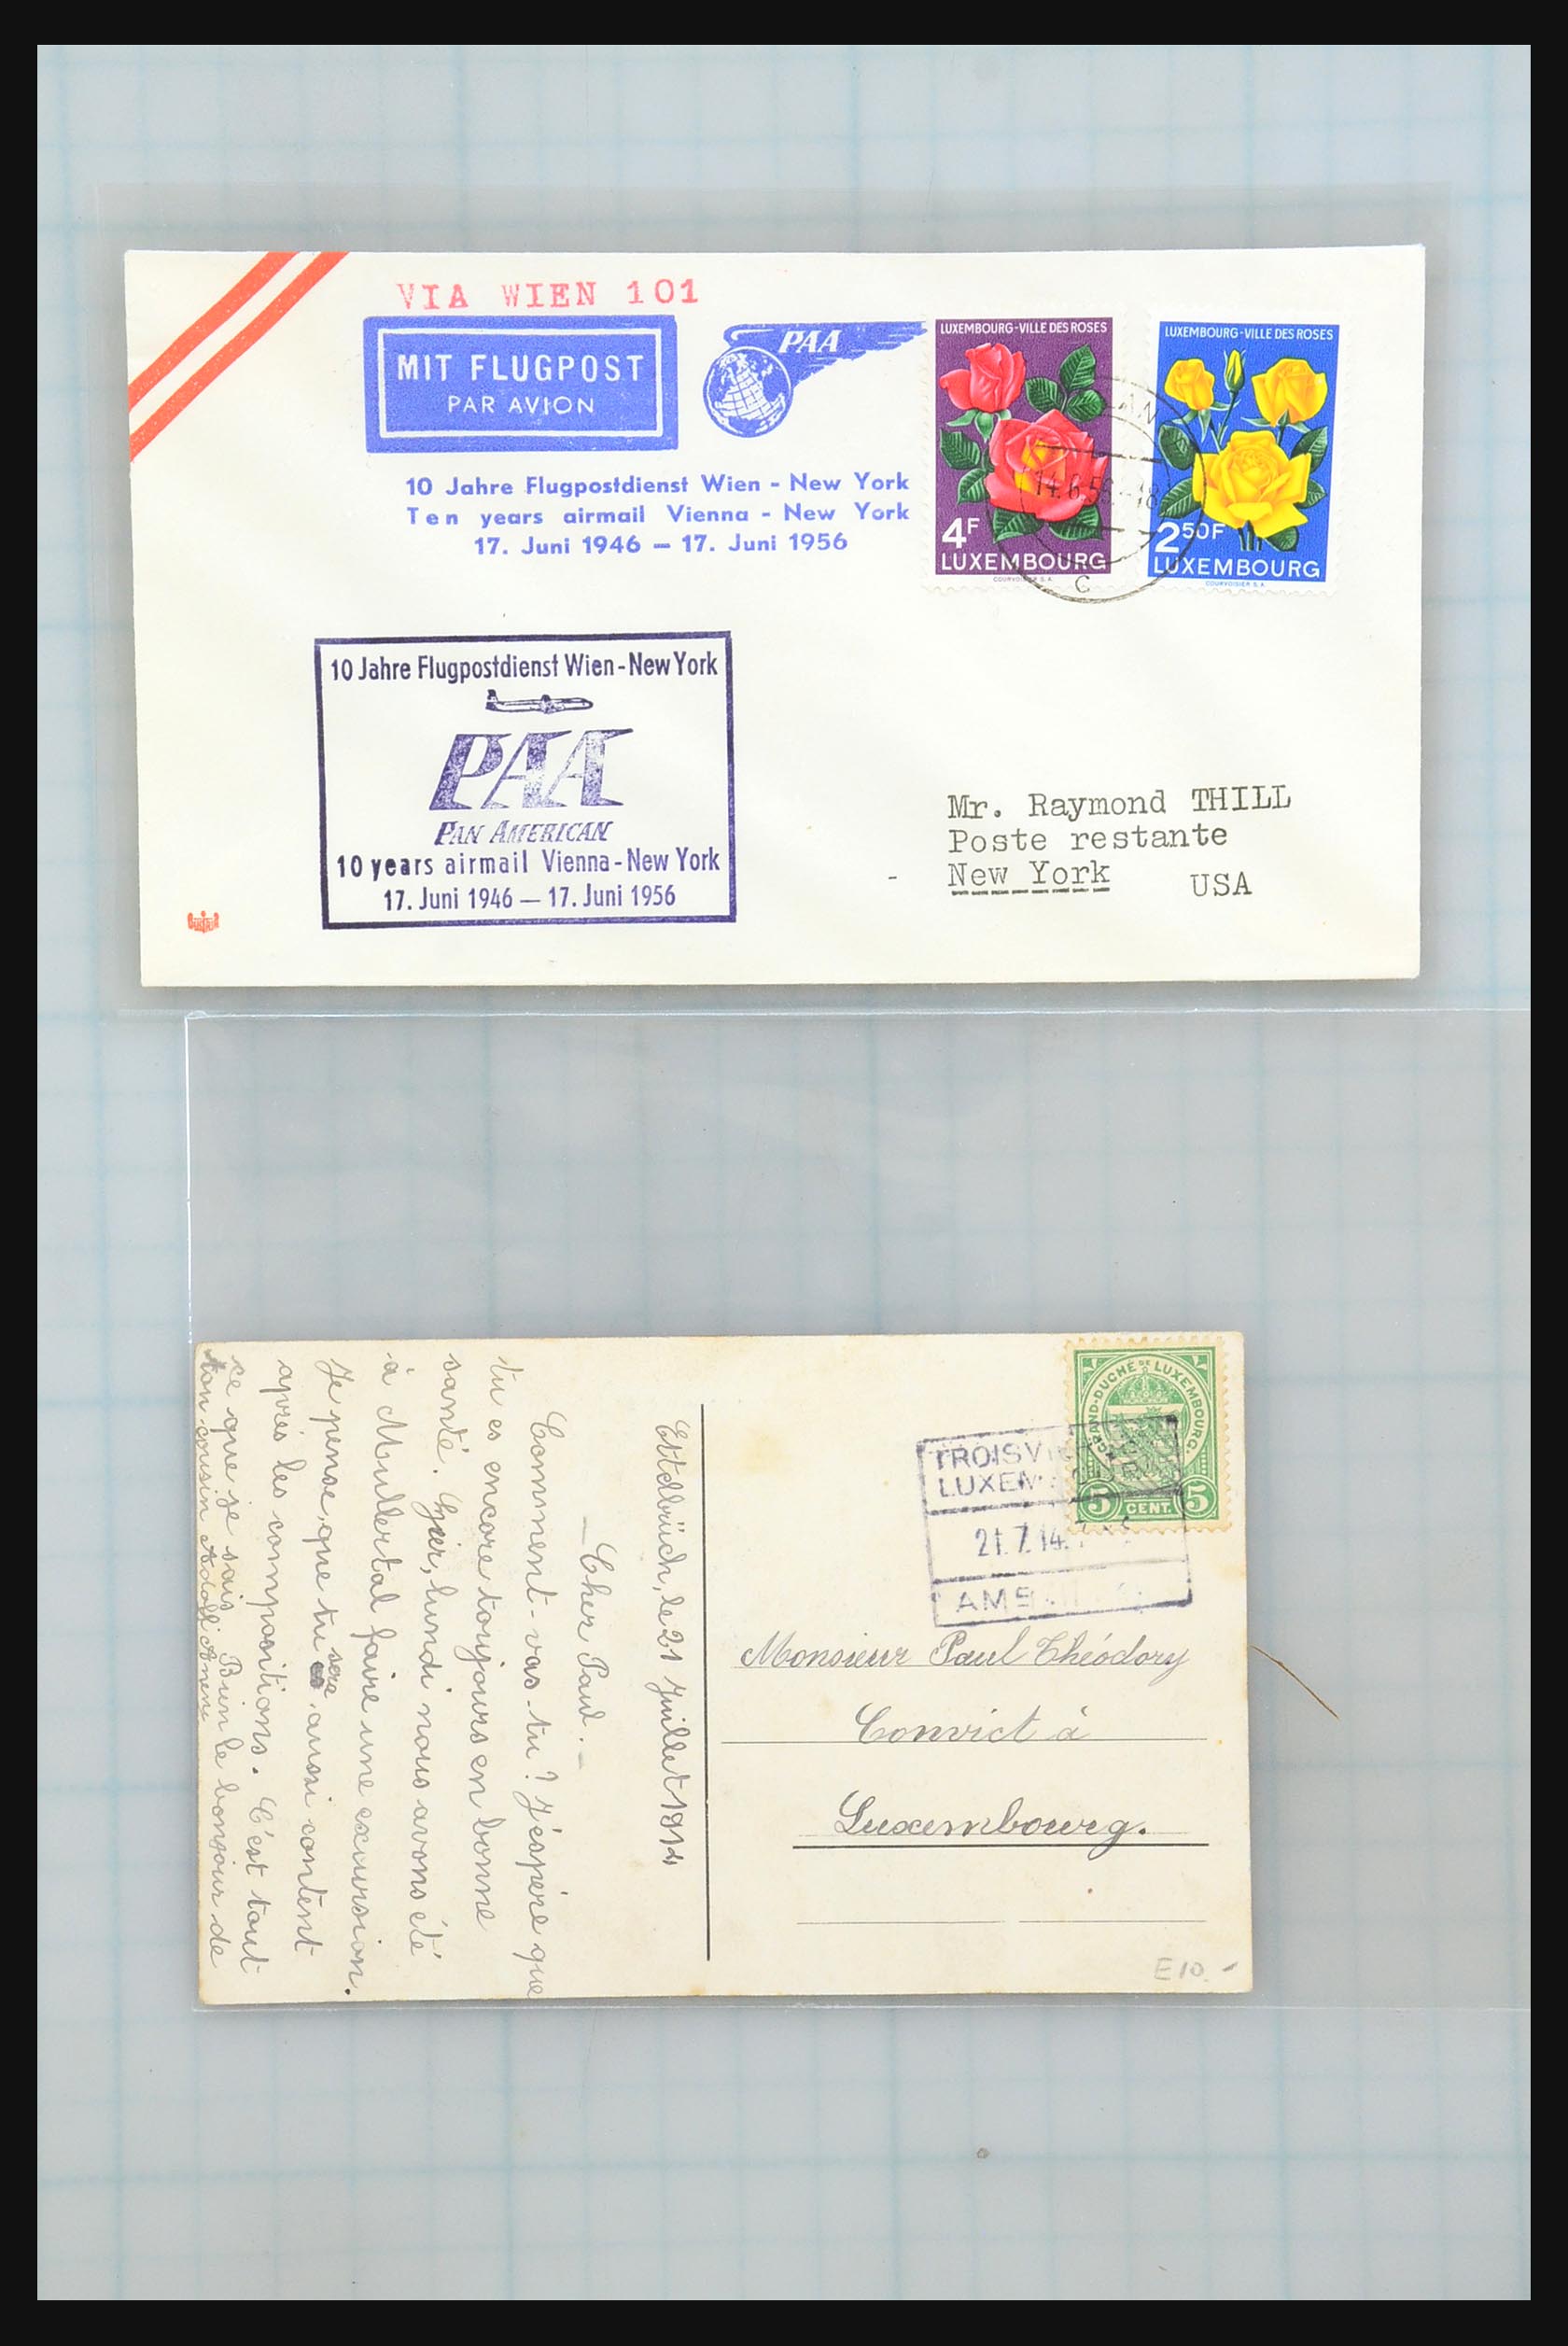 31358 077 - 31358 Portugal/Luxemburg/Griekenland brieven 1880-1960.